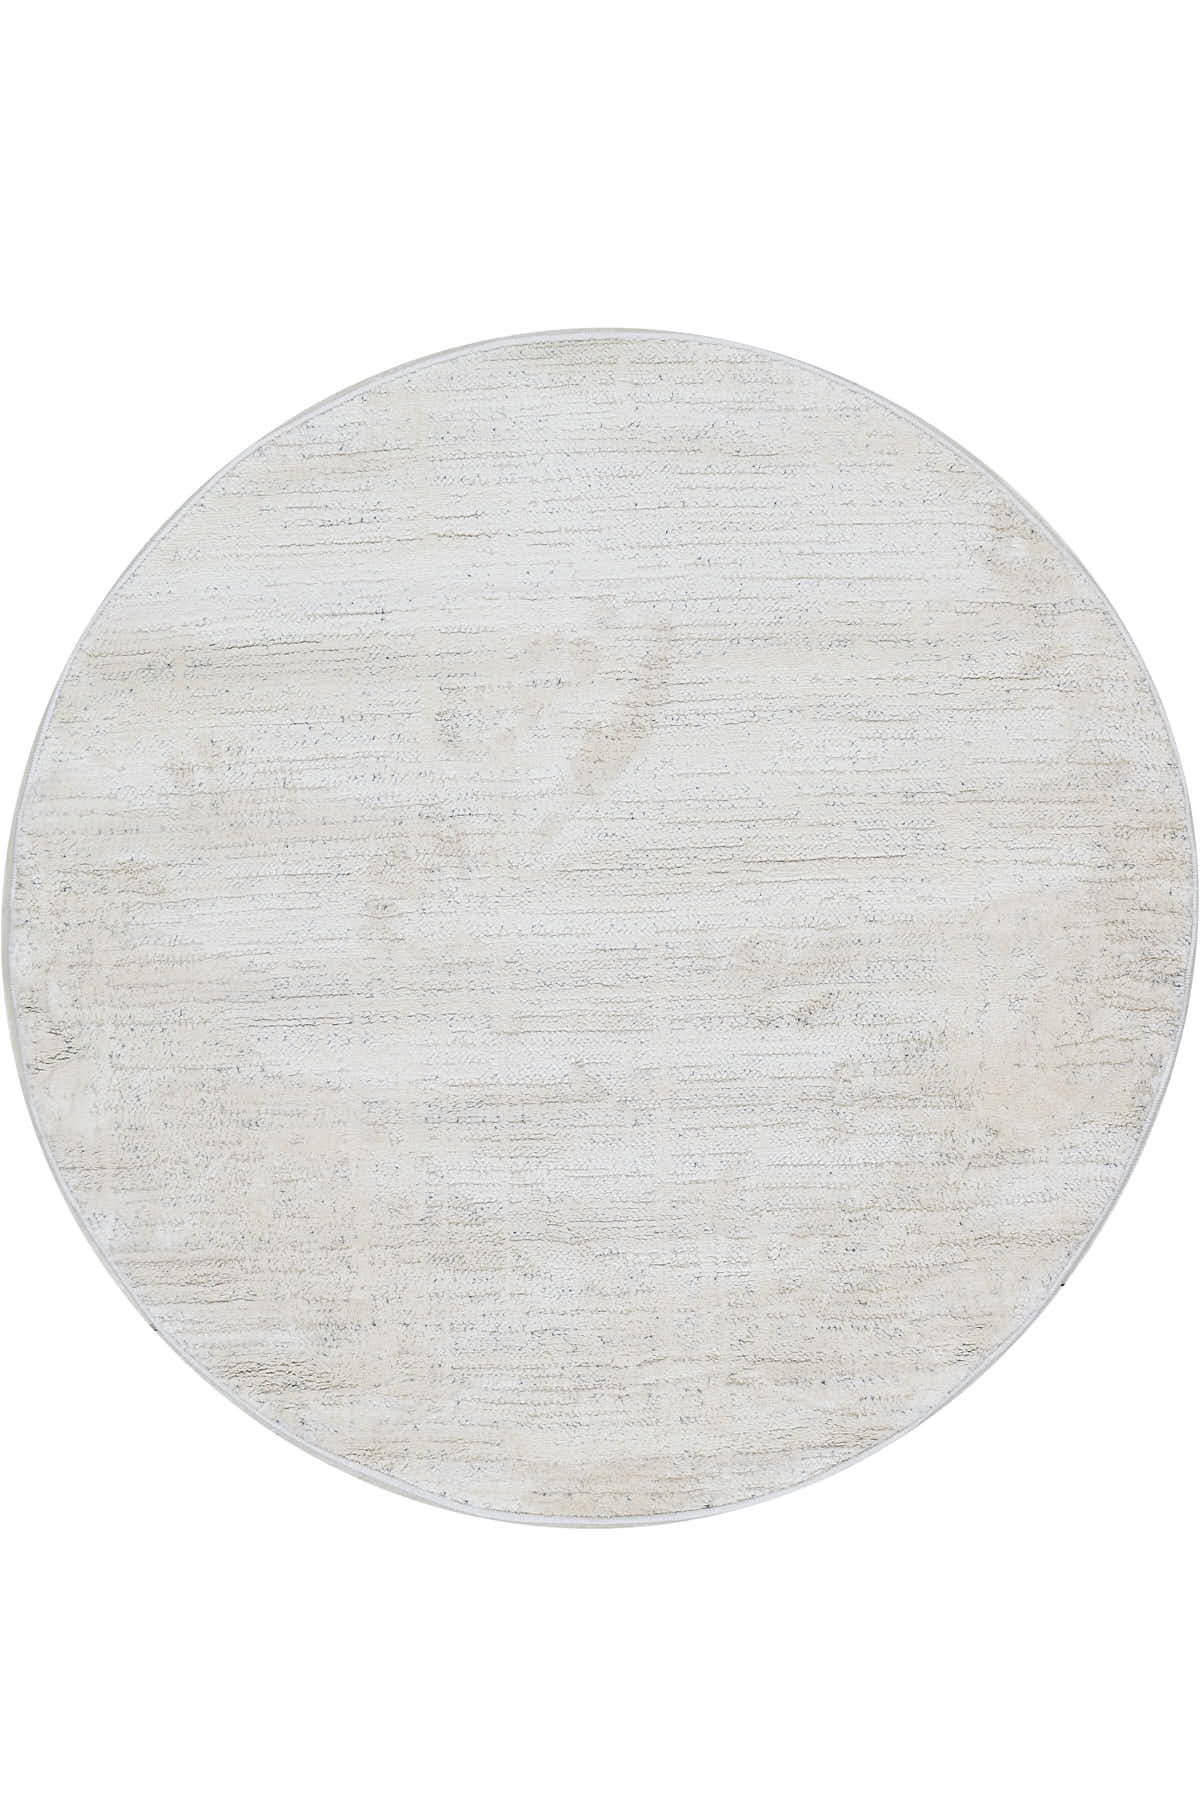 שטיח מאטיס MT01 עגול